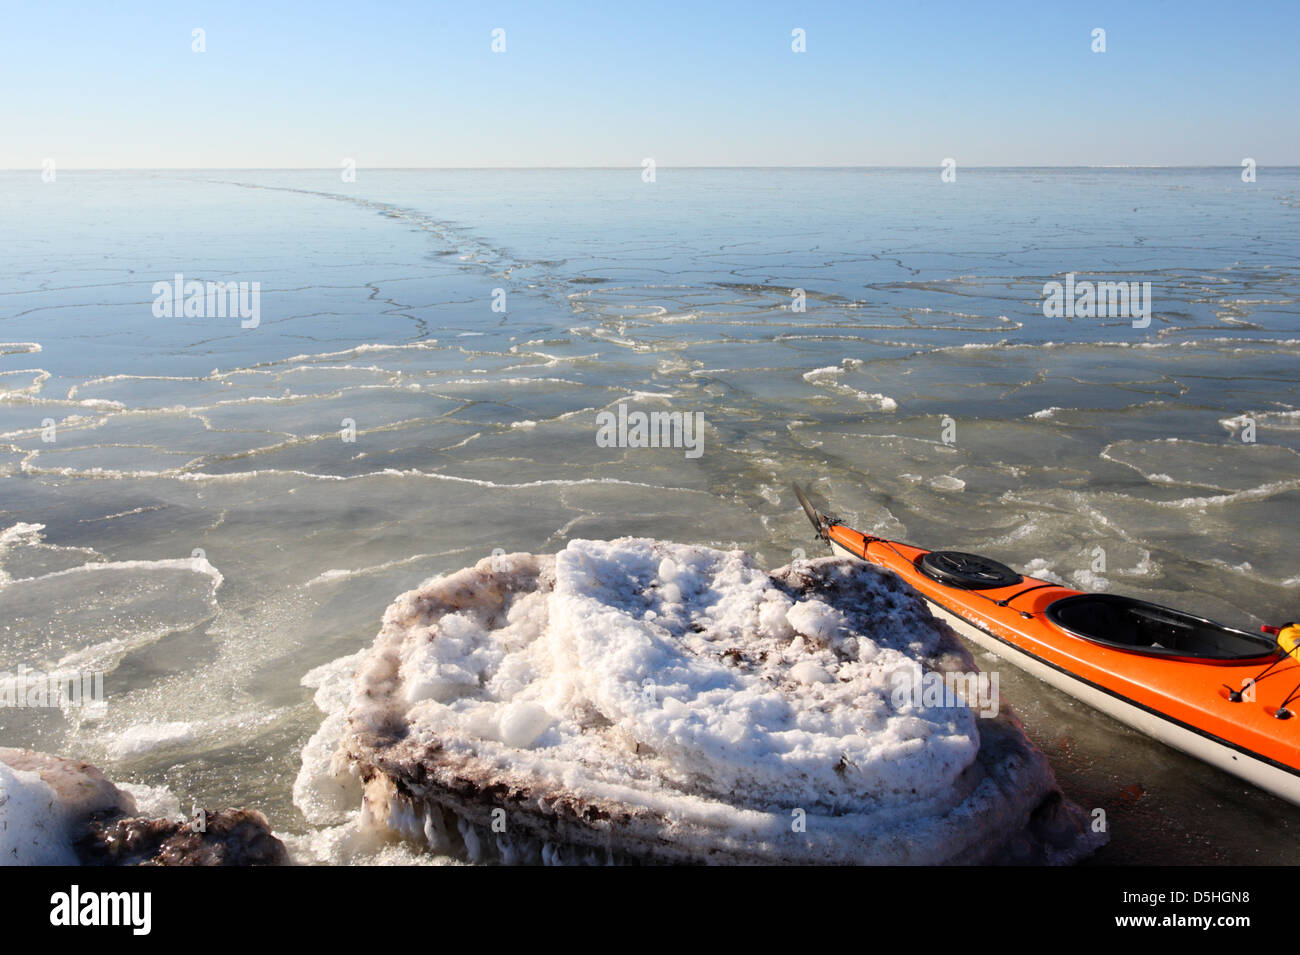 Trail pueden verse después de kayak pensado 3-5cm el hielo del mar. Europa, Estonia Foto de stock